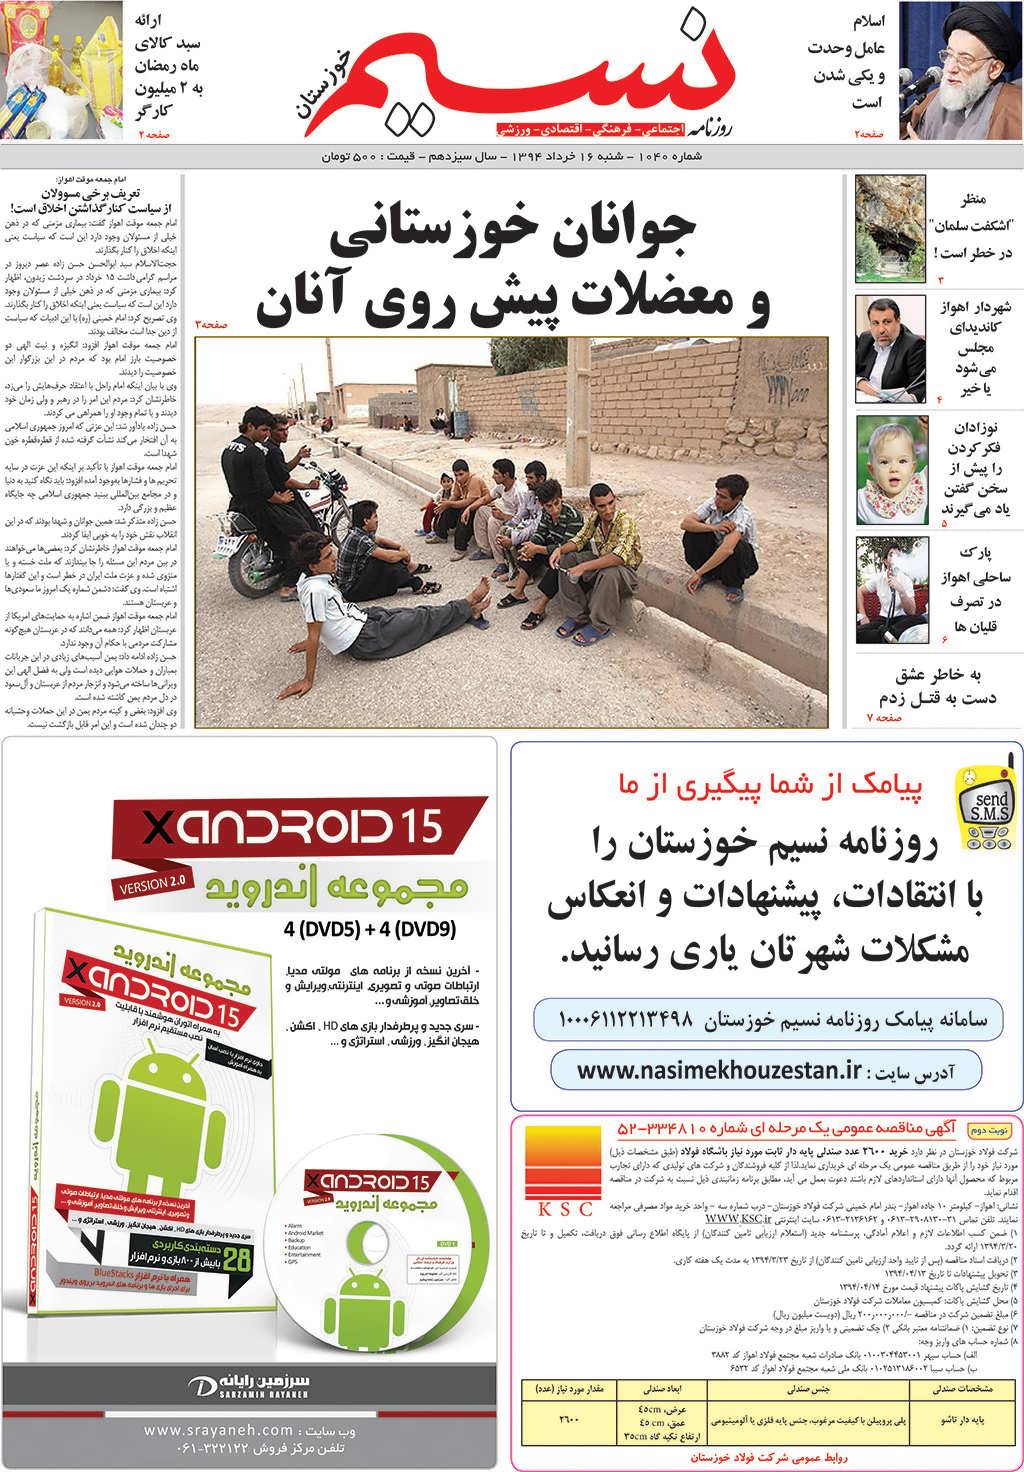 صفحه اصلی روزنامه نسیم شماره 1040